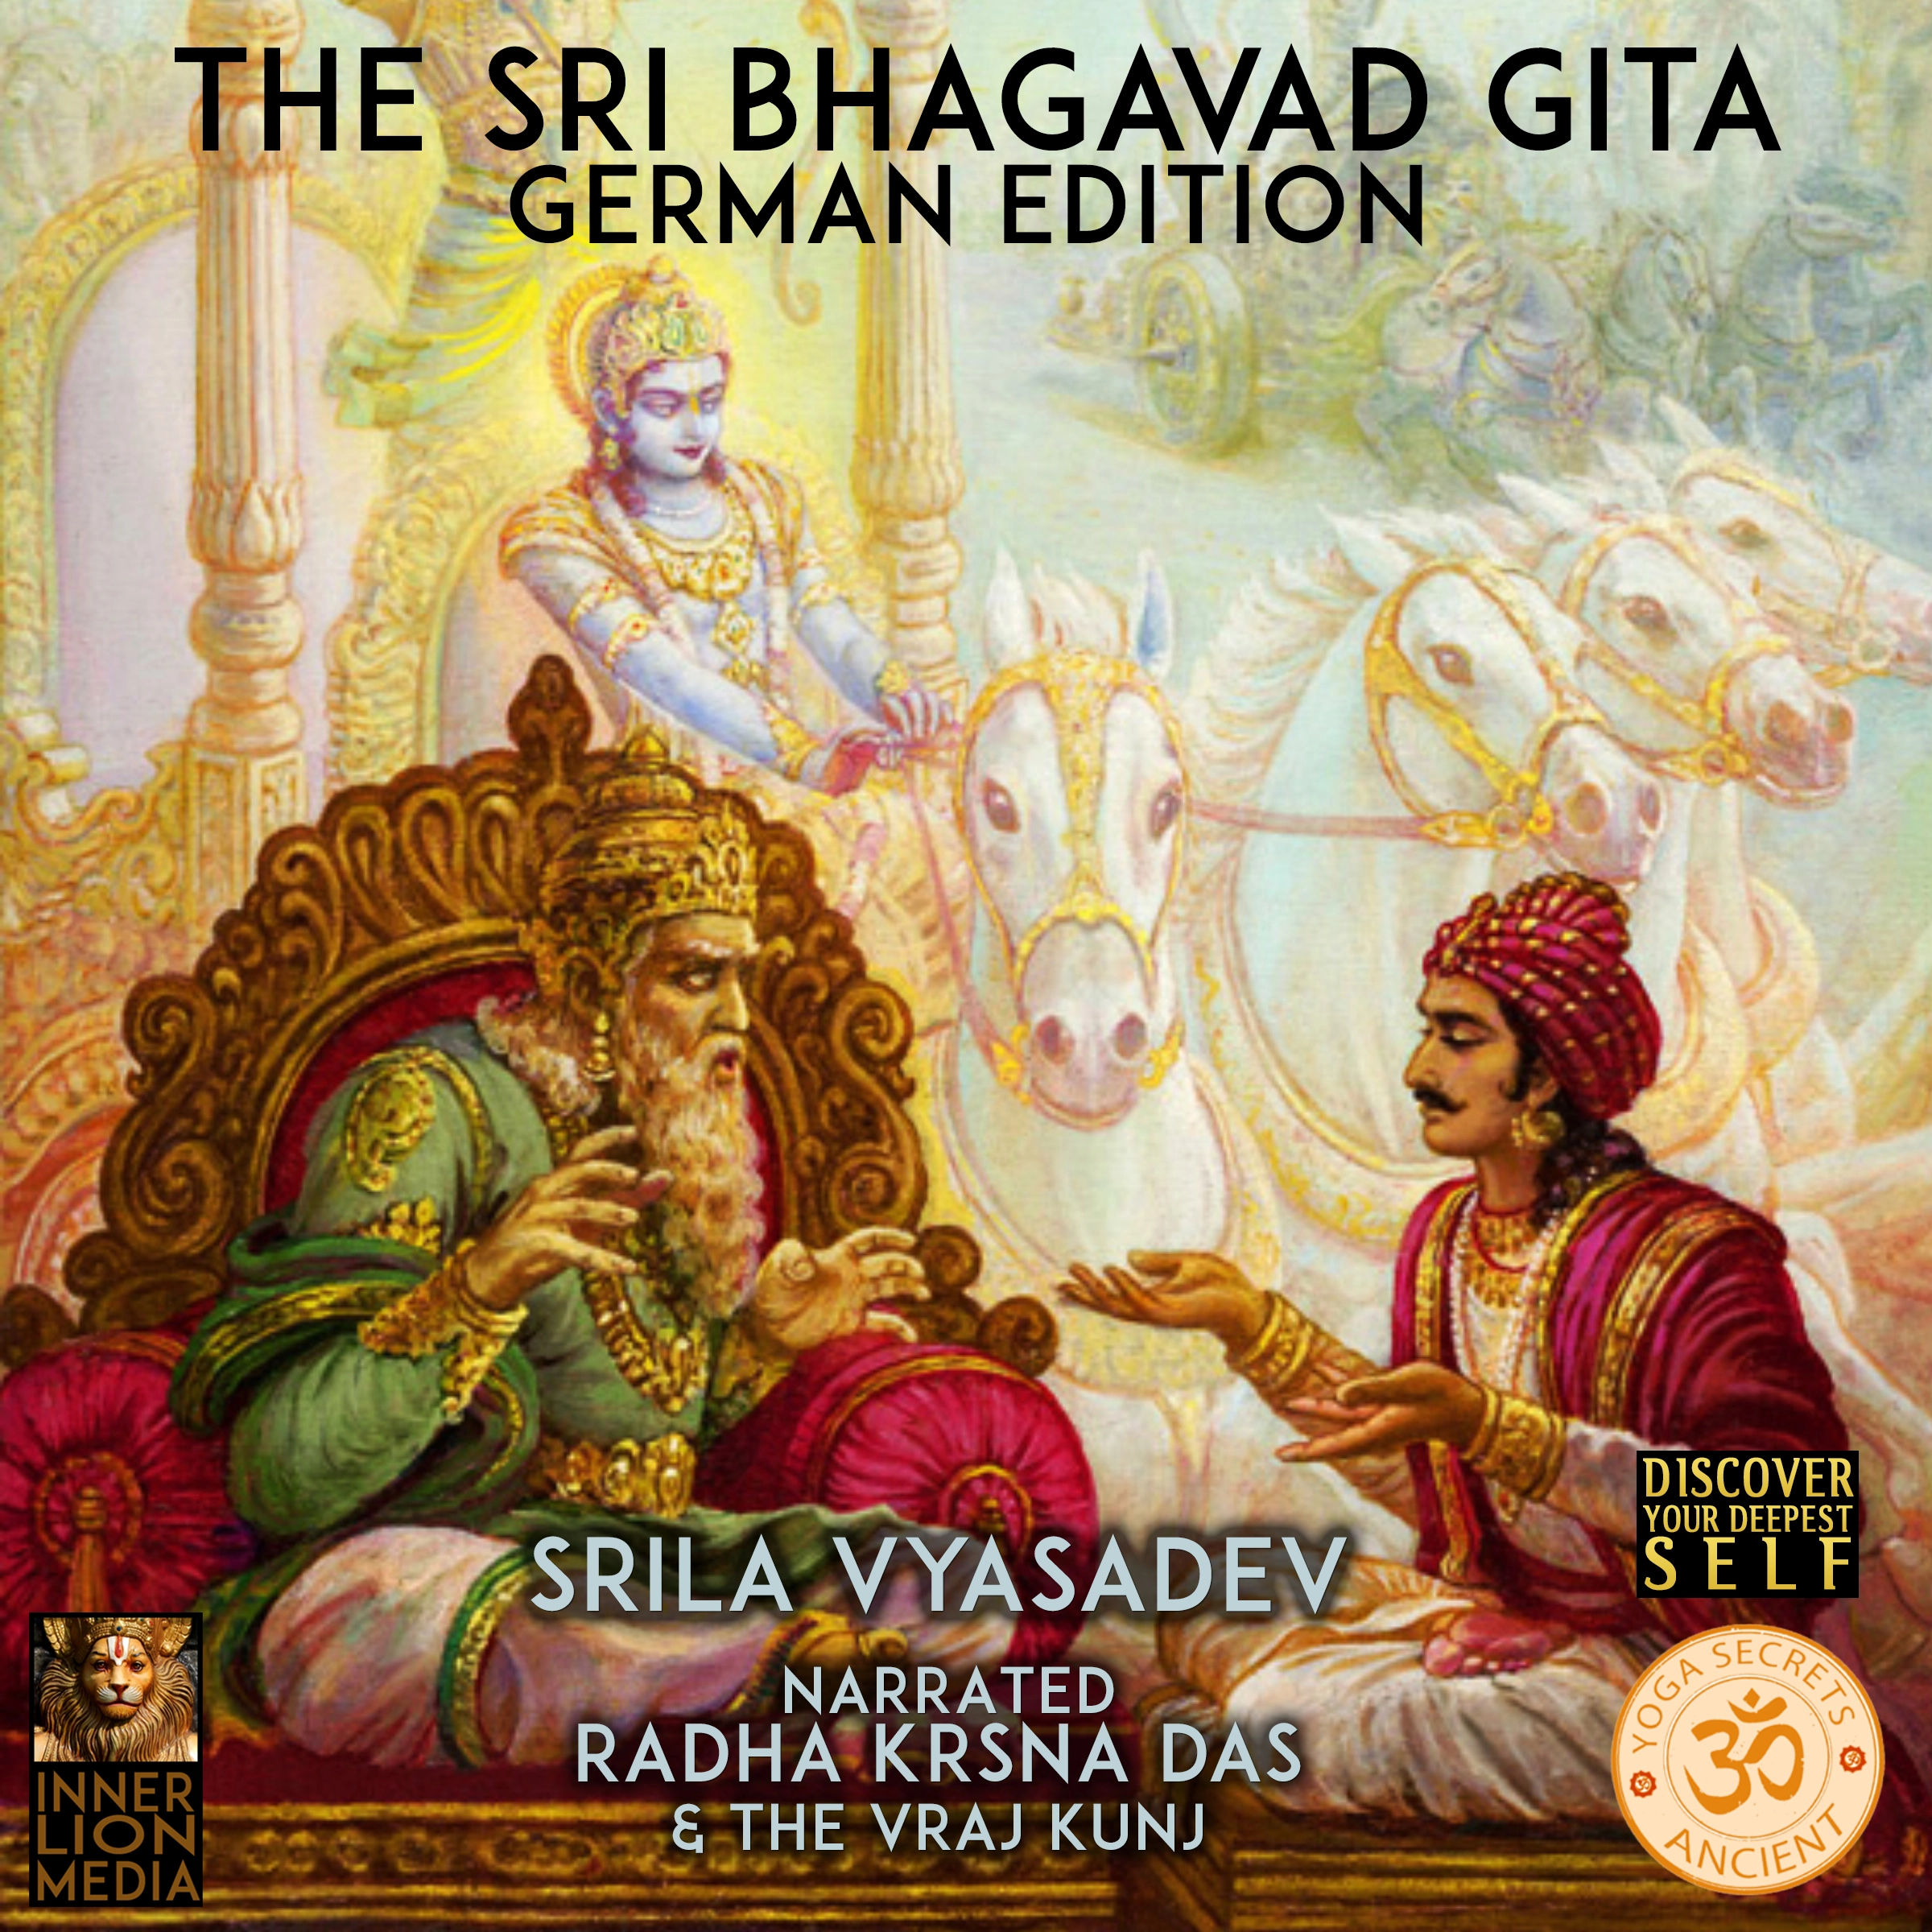 The Sri Bhagavad Gita by Srila Vyasadev